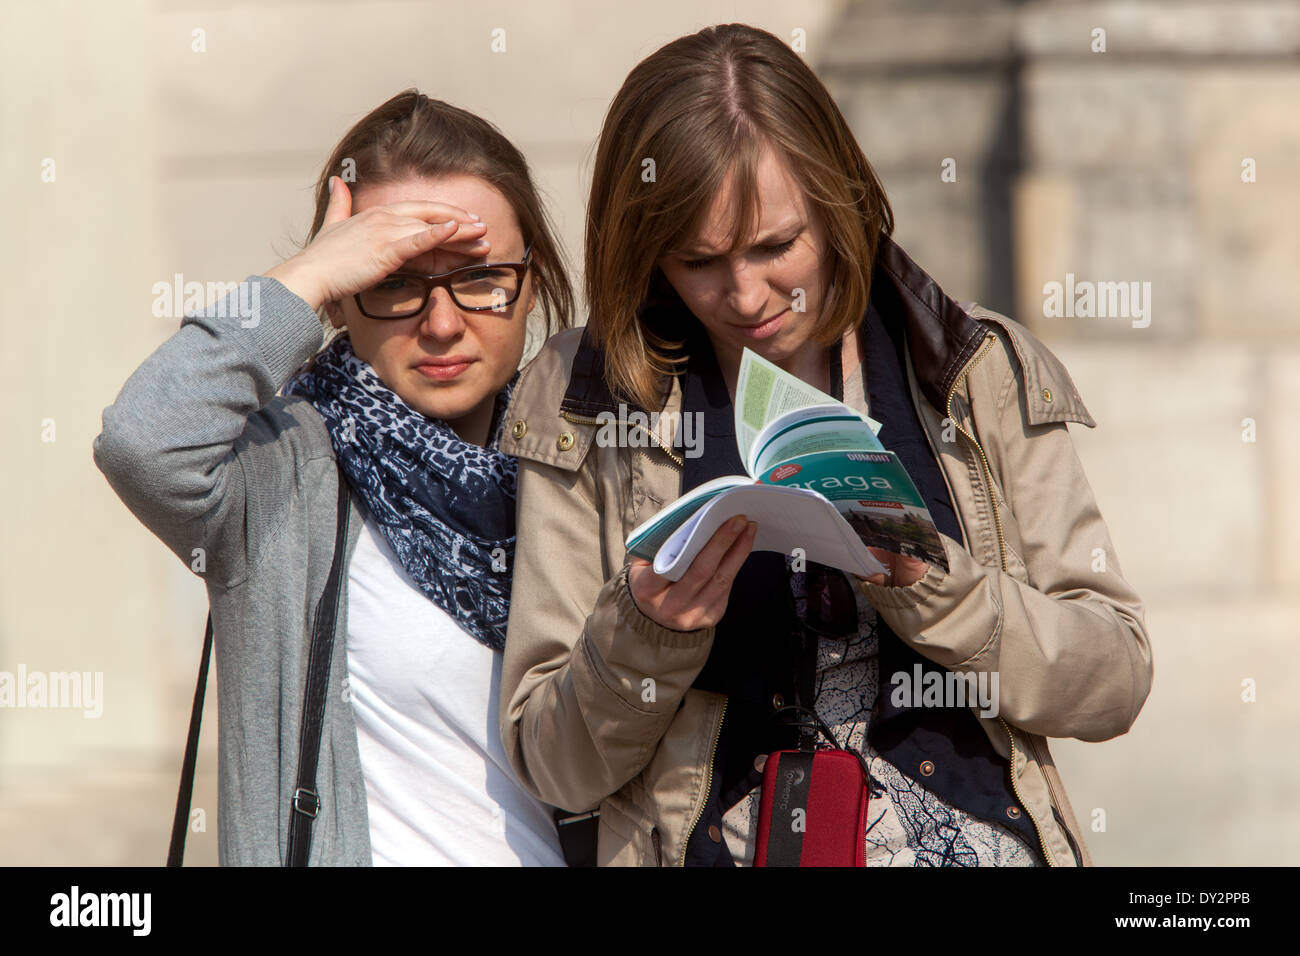 Zwei Frauen reisen mit Reiseführer, Prag Touristische Tour Tschechische Republik Reiseführer Buch Stockfoto